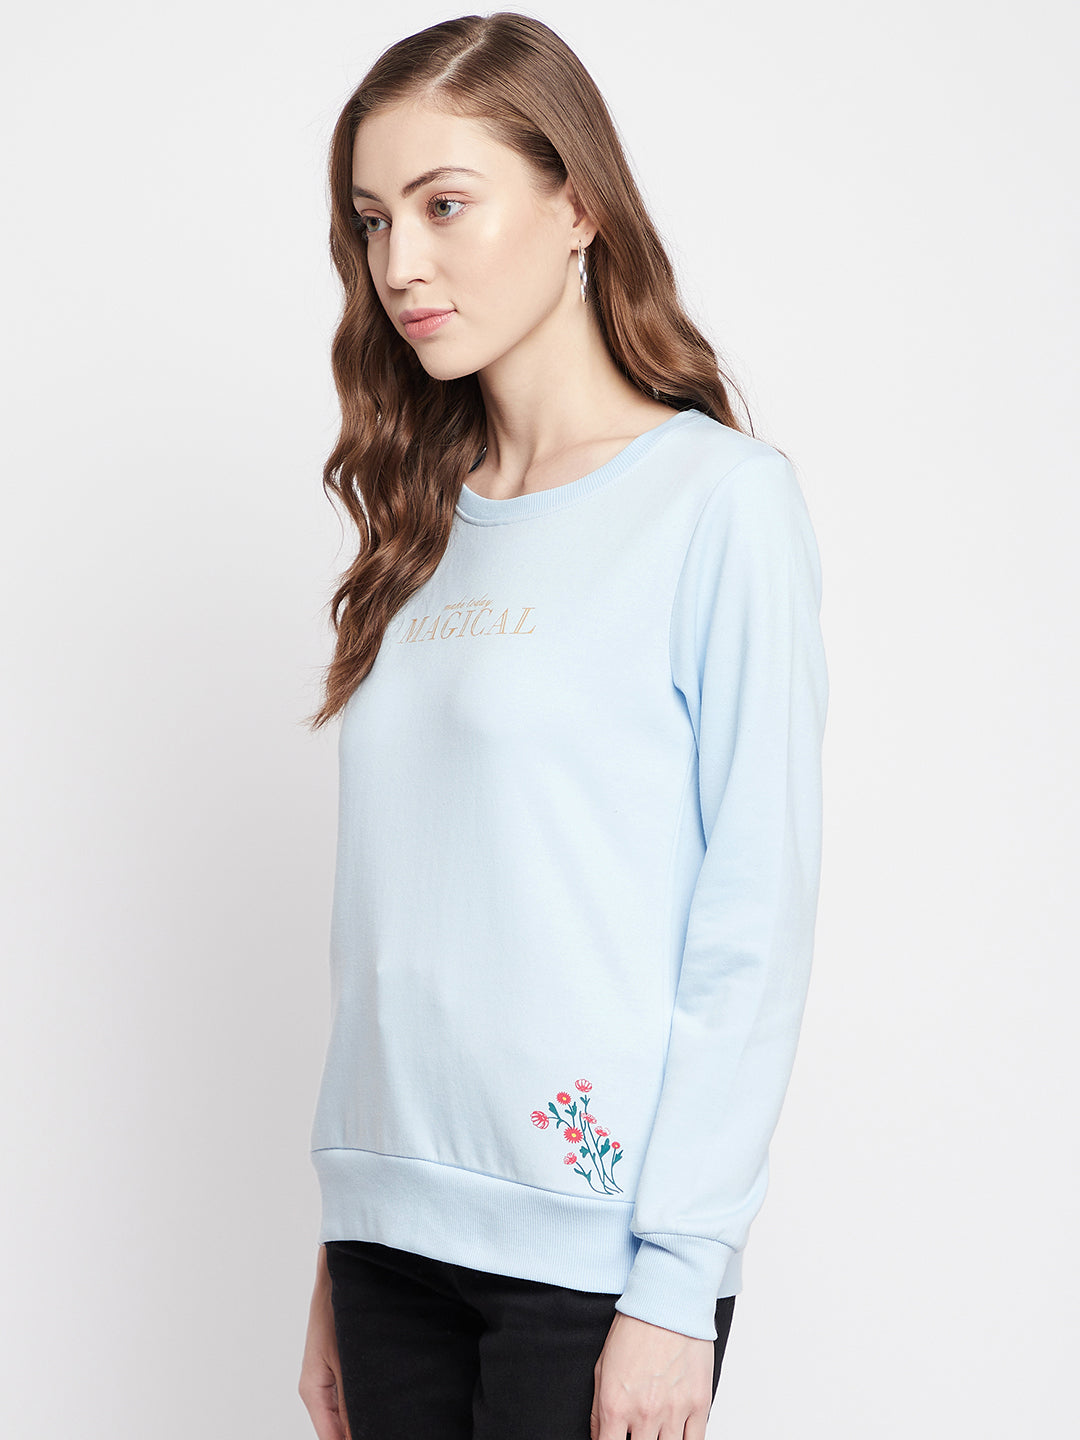 Blue Printed Round Neck Sweatshirt - Women Sweatshirts